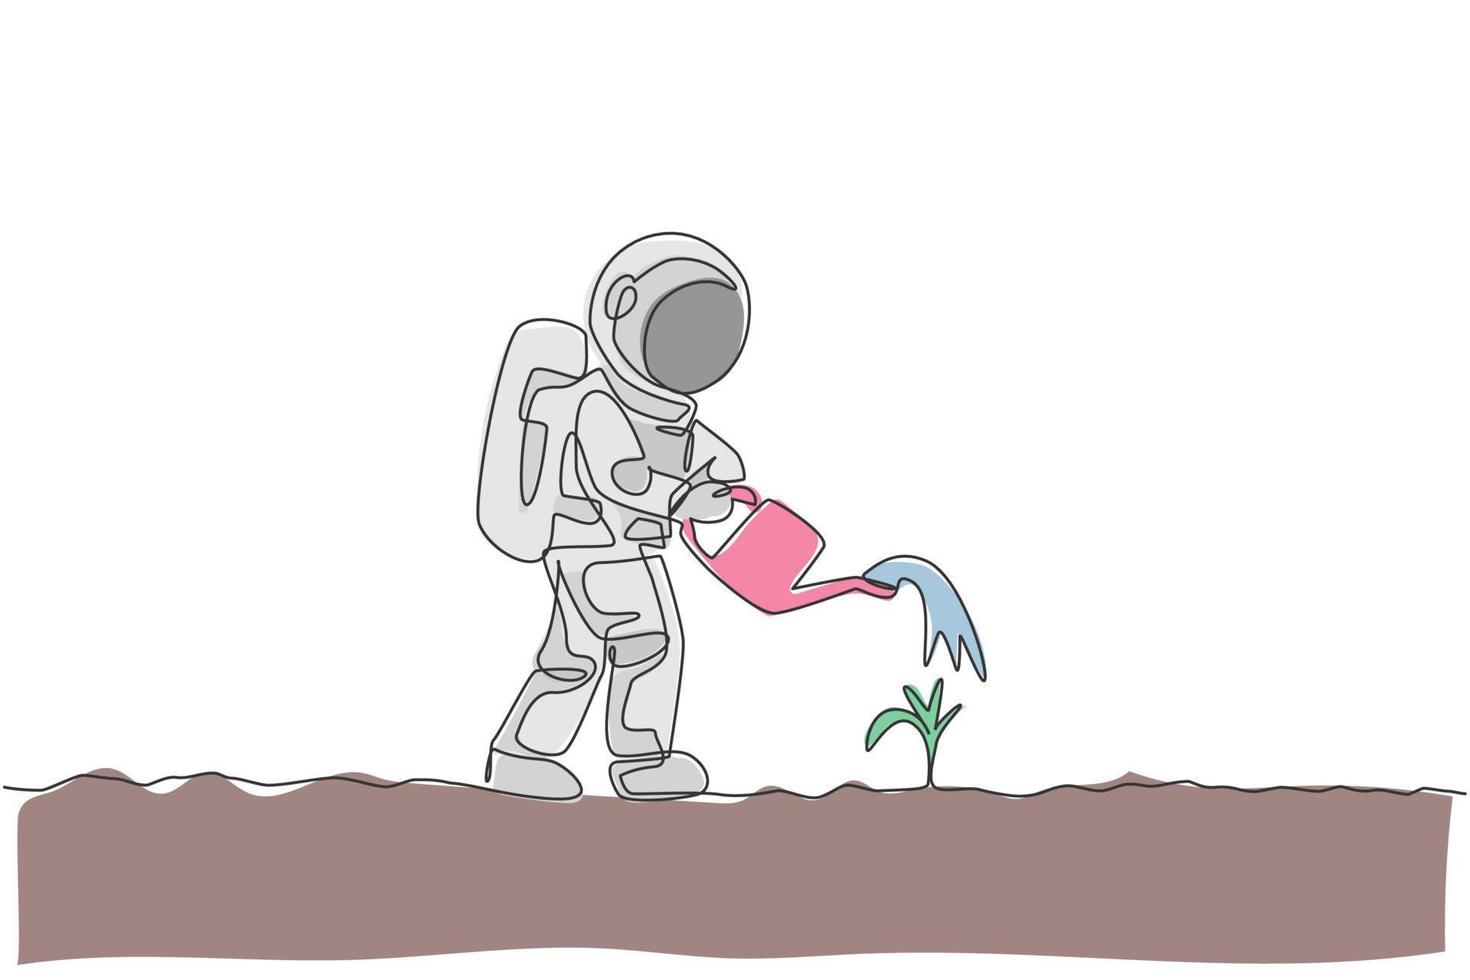 un dessin au trait continu d'un astronaute arrosant un arbre végétal à l'aide d'un arrosoir en métal à la surface de la lune. concept d'astronaute agricole dans l'espace lointain. illustration vectorielle de dessin graphique à une seule ligne dynamique vecteur